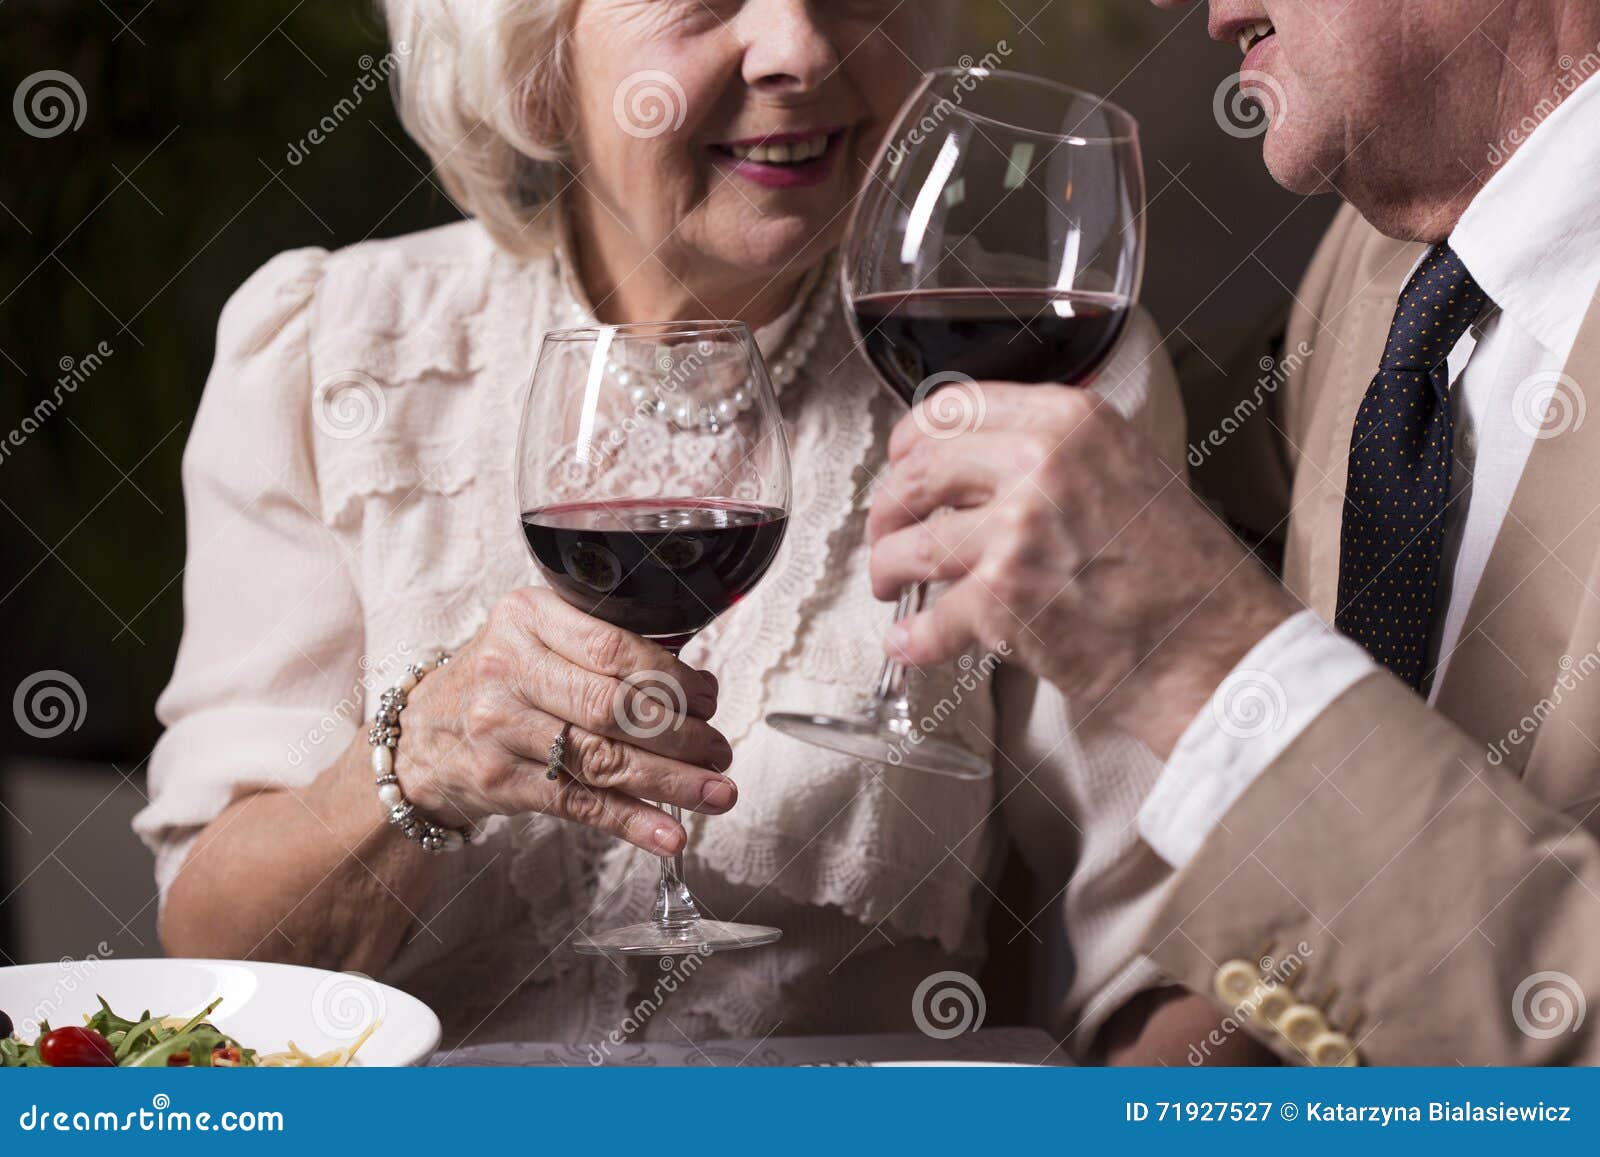 Он старше и пьет. Пожилые пьют вино. Пожилые люди пьют вино. Пенсионеры пьют вино. Вино со стариком.